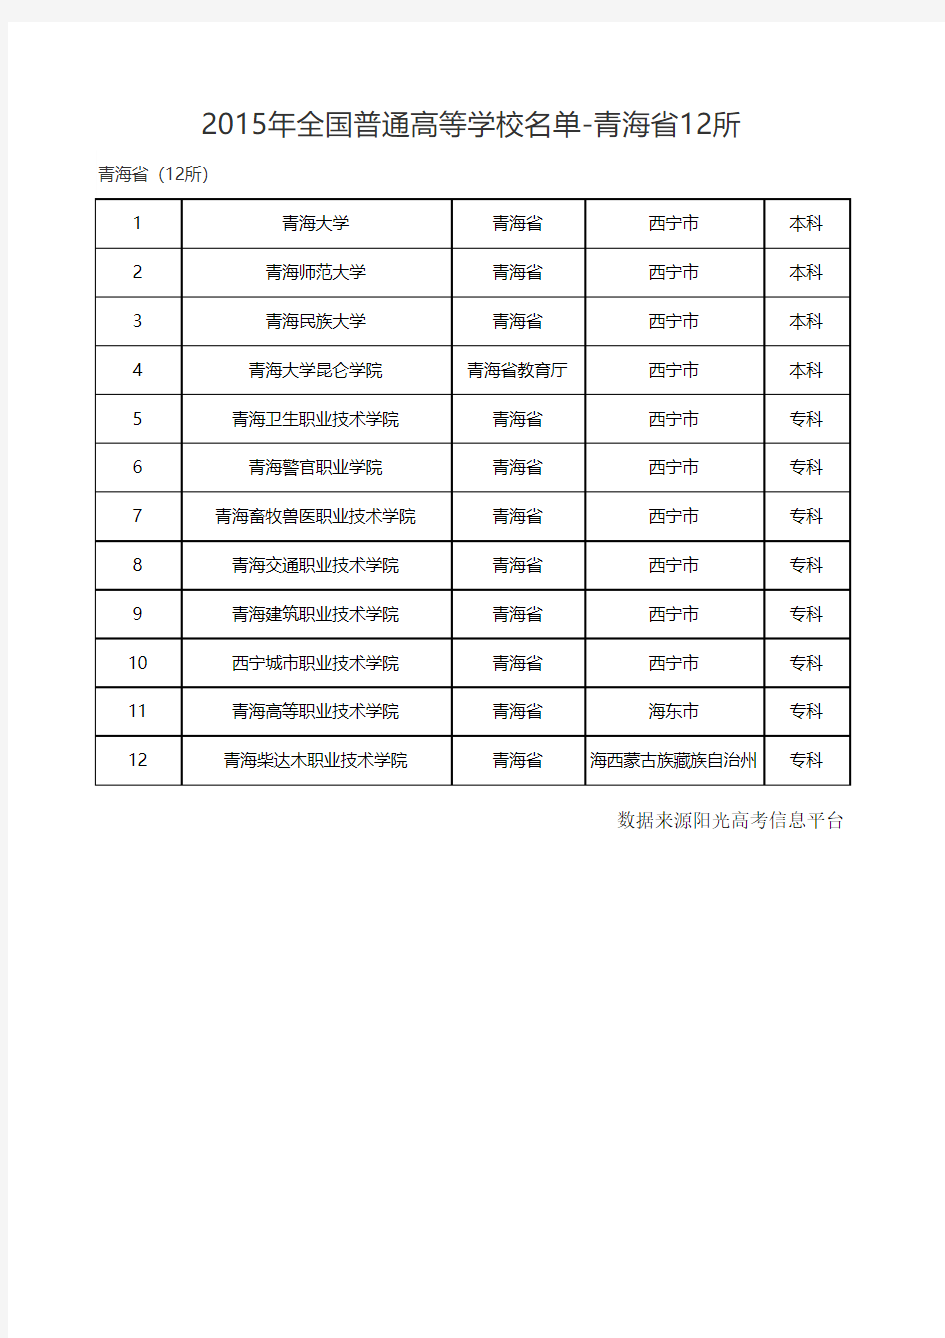 2015年全国普通高等学校名单-青海省12所